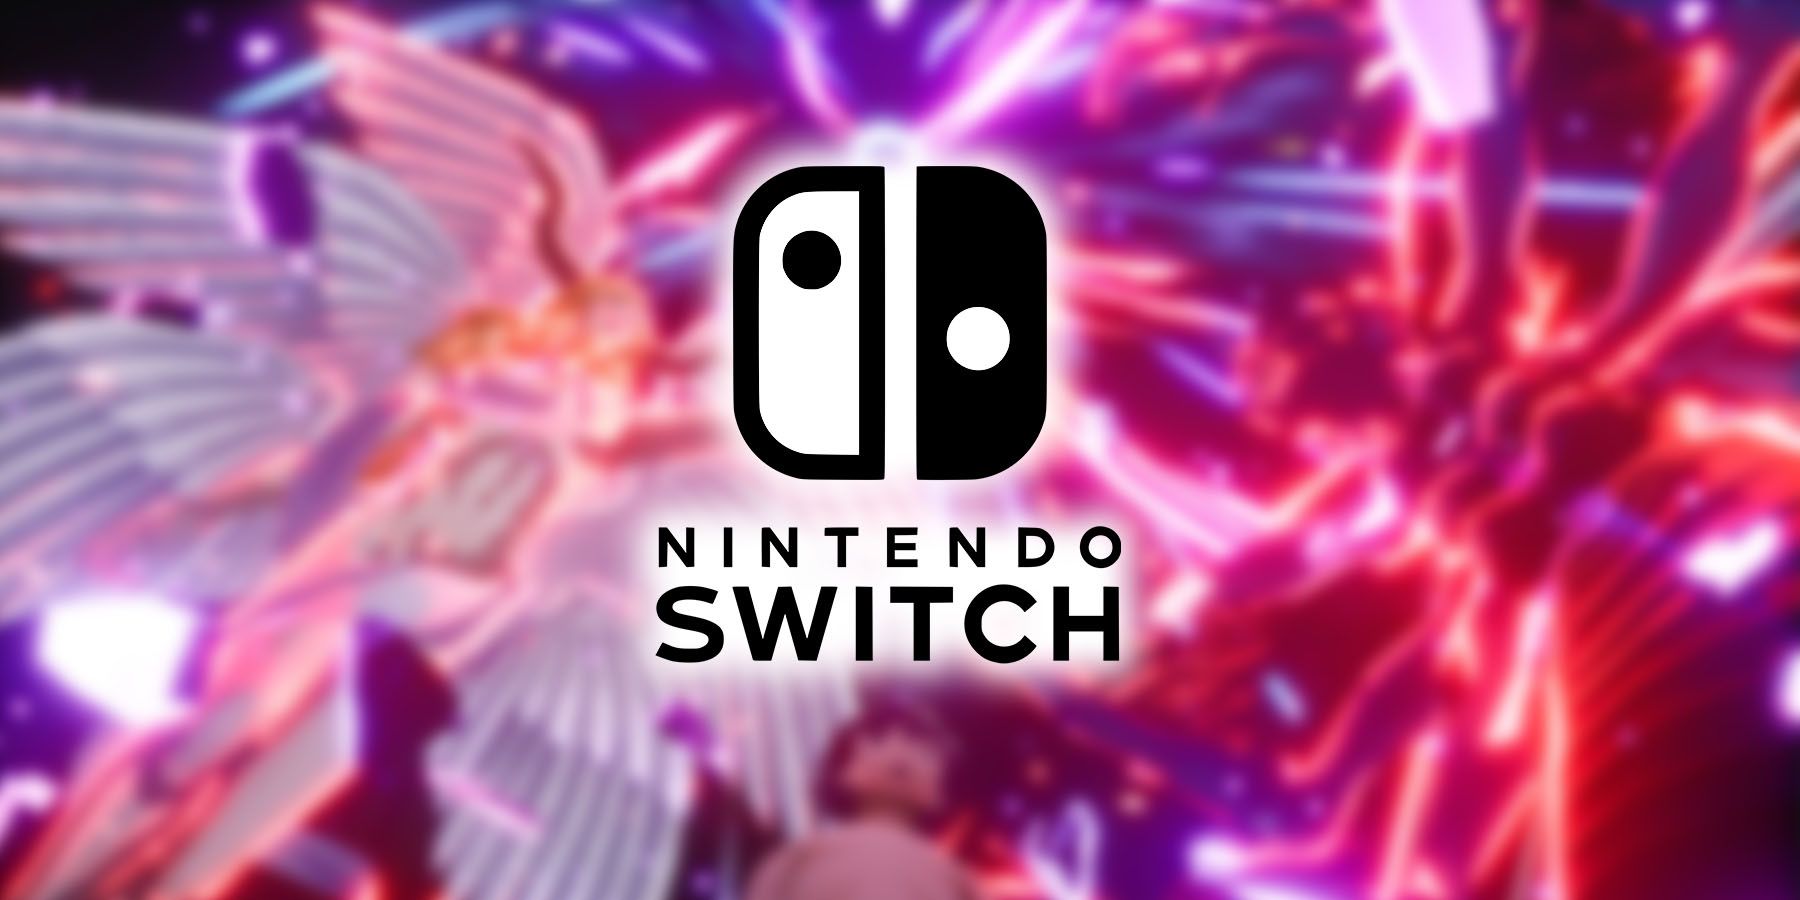 Persona 6 Switch Successor